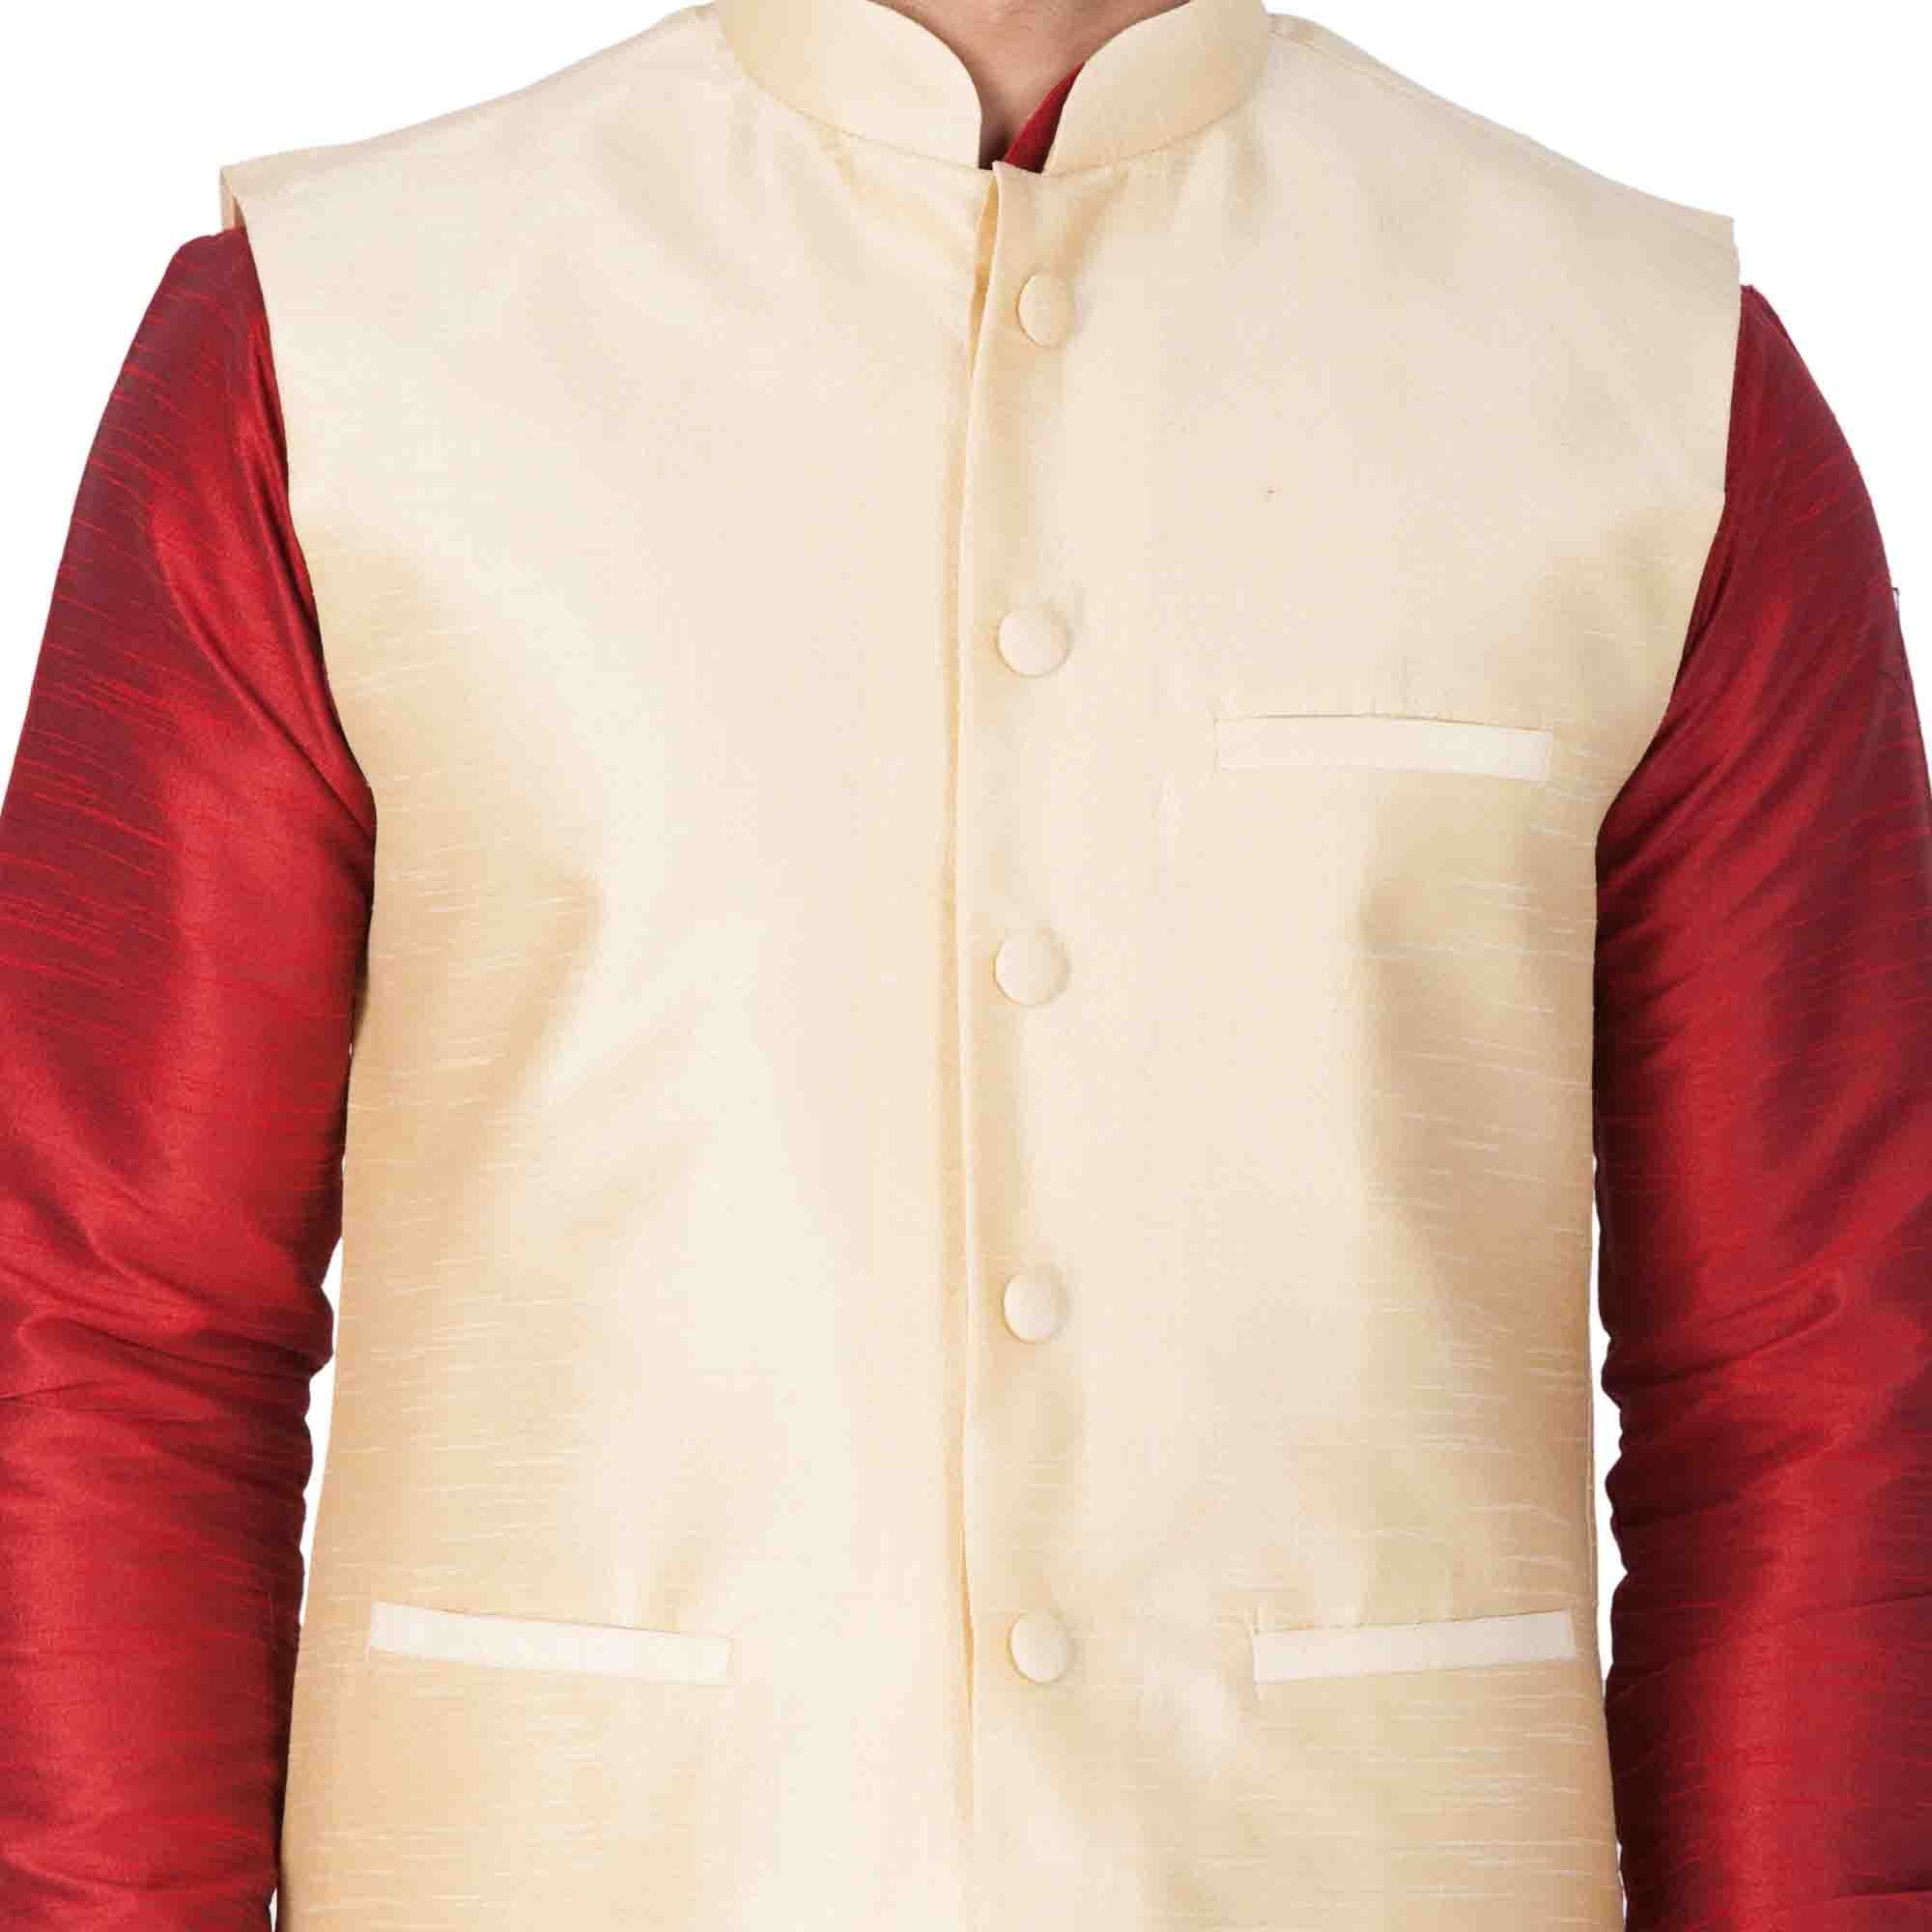 Men's Maroon Cotton Silk Blend Kurta, Ethnic Jacket and Pyjama Set